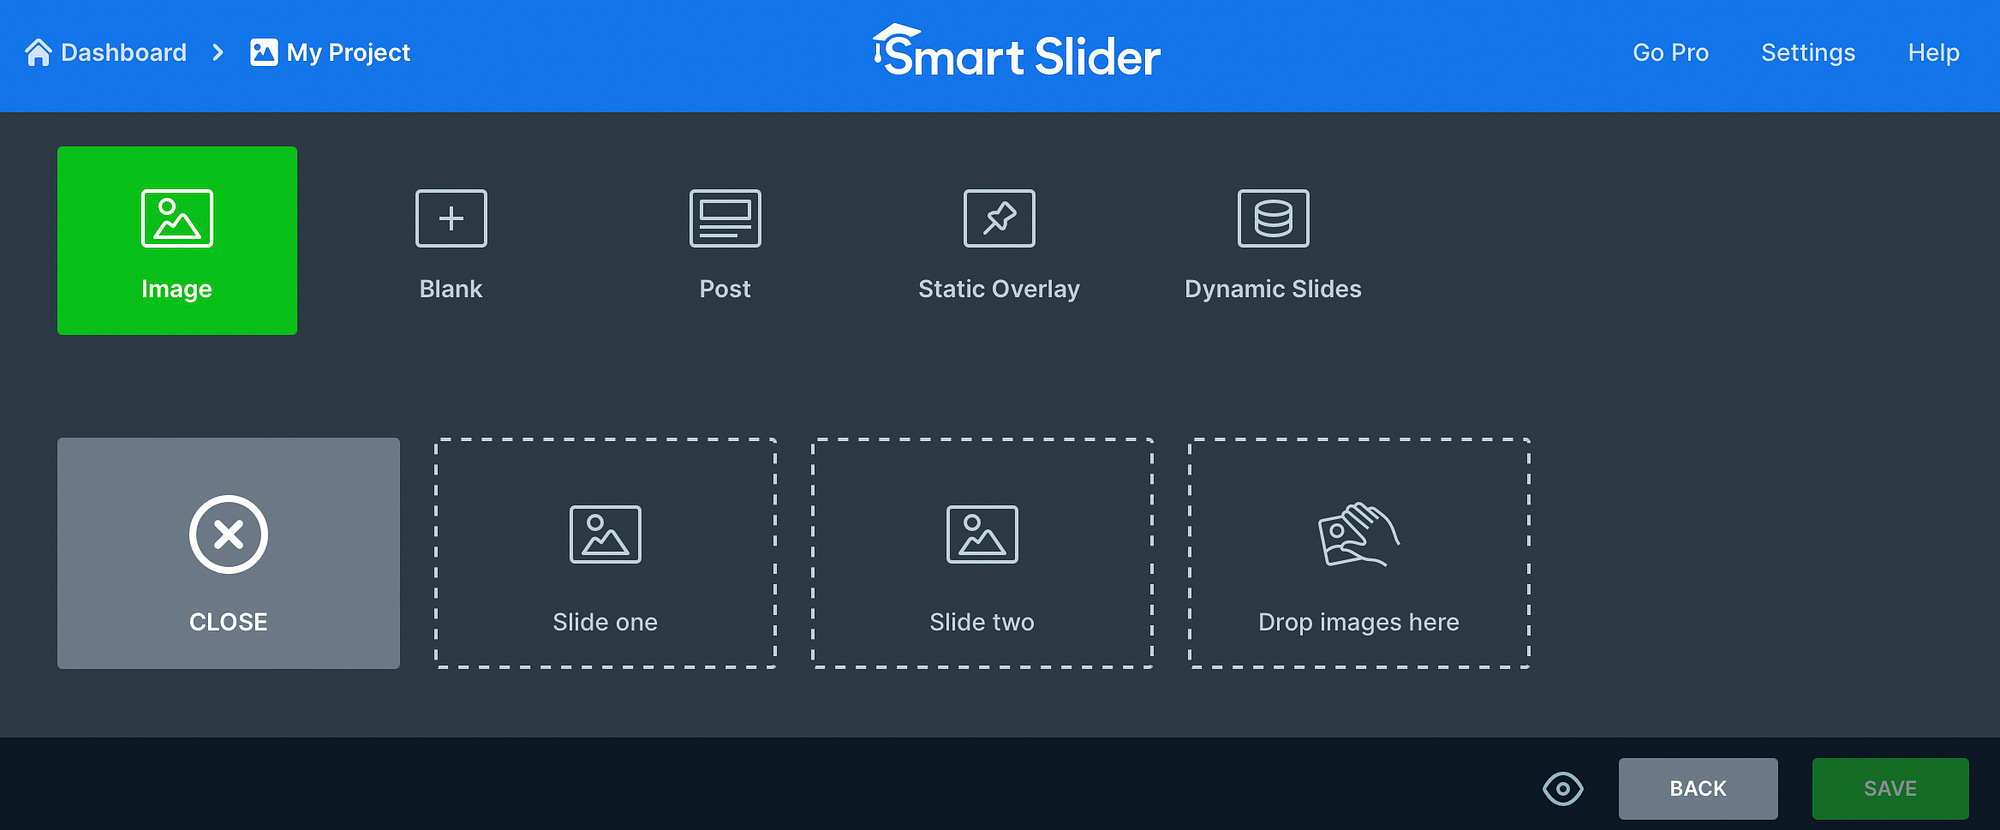 تصاویر را در Smart Slider 3 آپلود کنید.